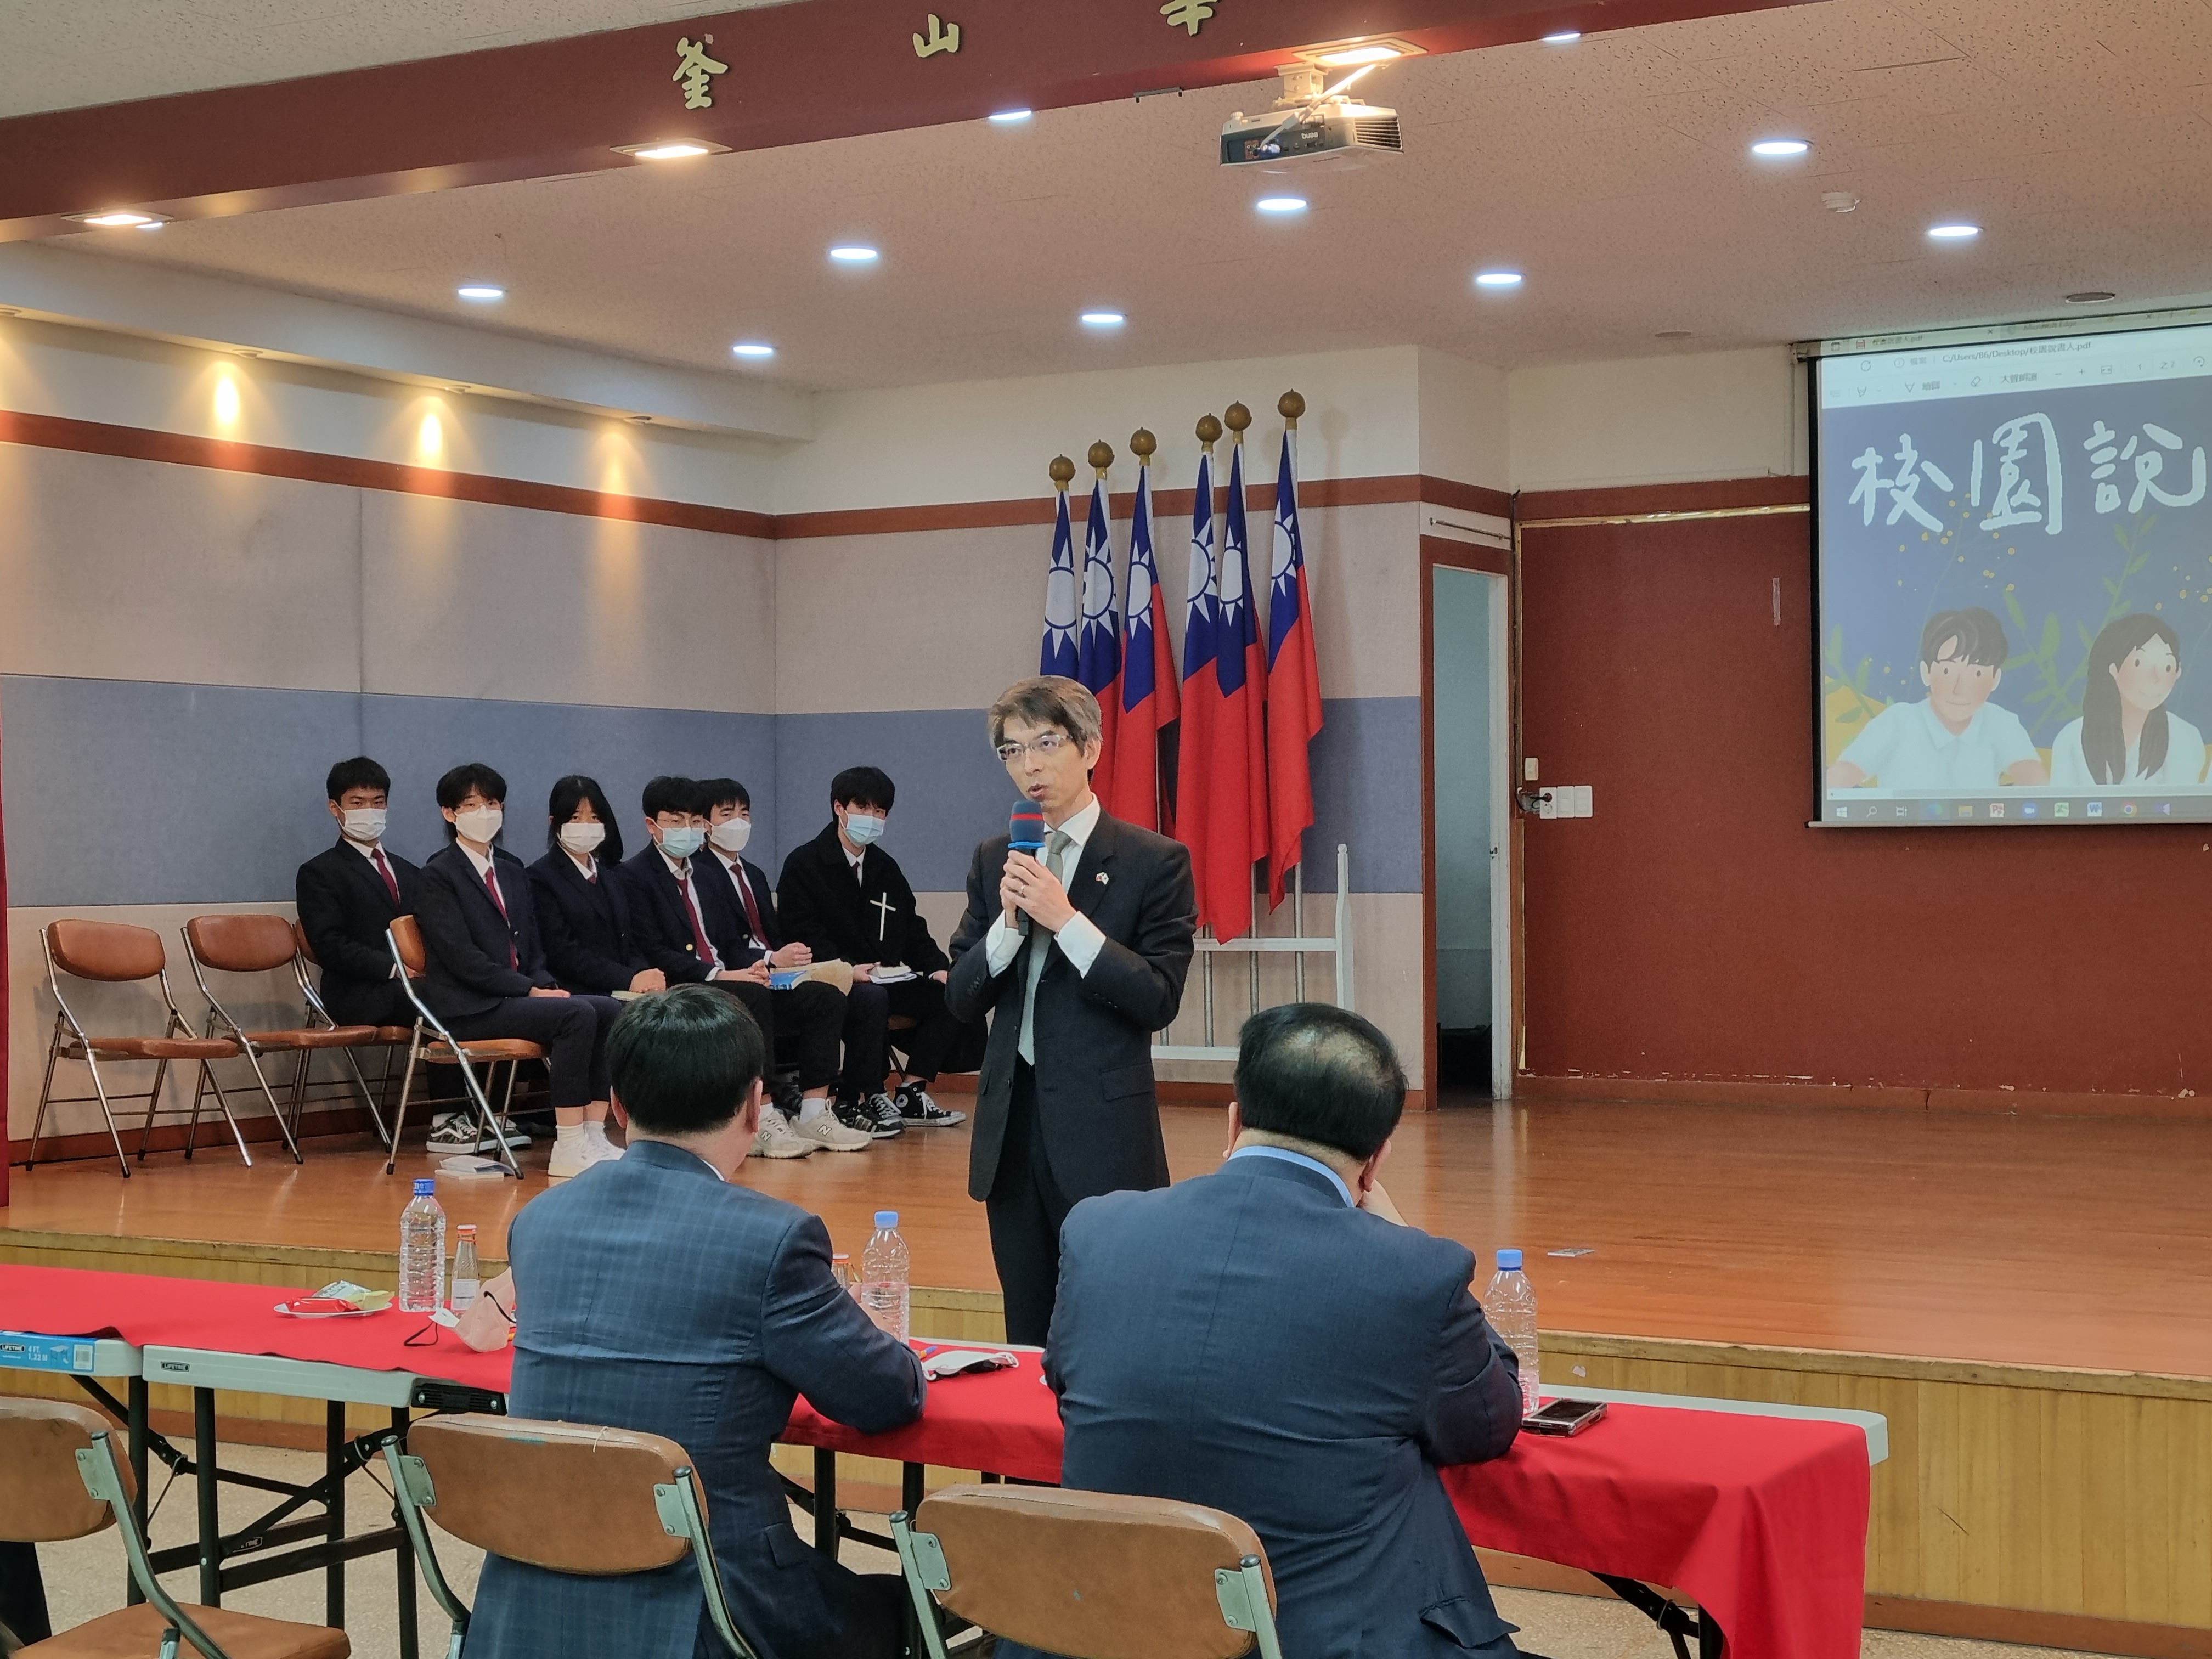 台北駐首爾代表部釜山辦事處林晨富處長賽後分享演講的技巧，讓與會大眾都獲益良多